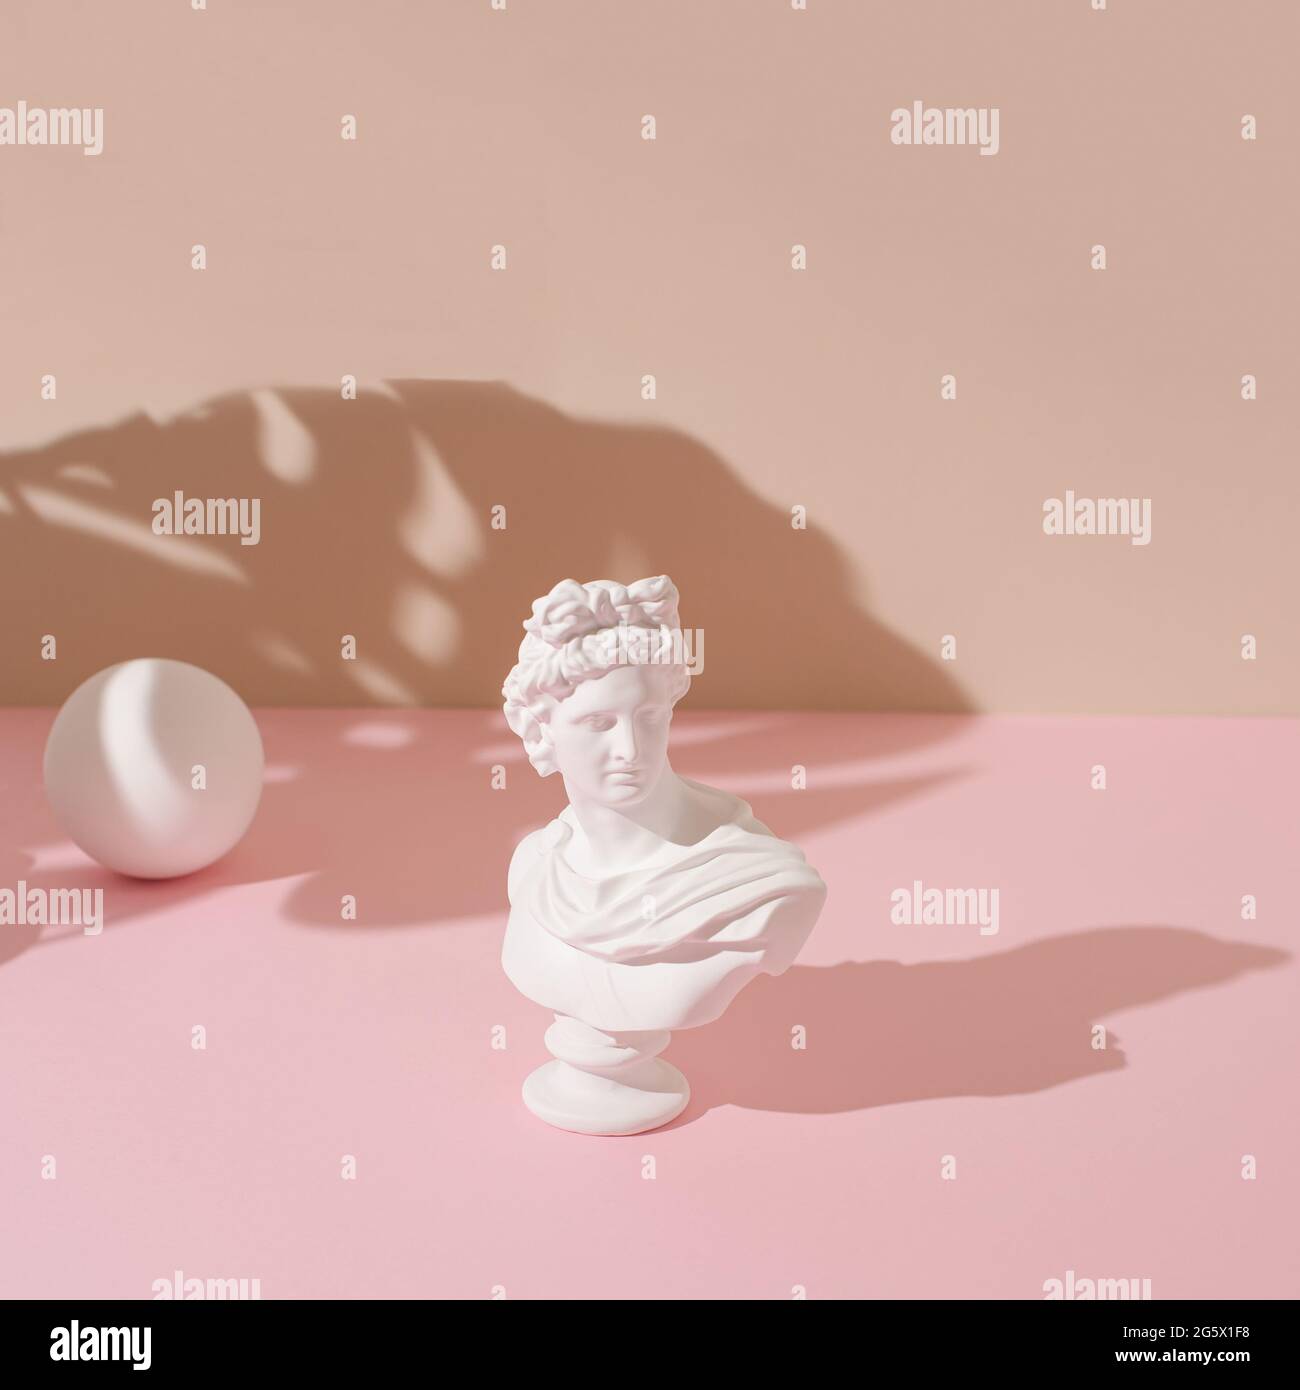 Kreatives Layout mit der Skulptur eines antiken Apollo und einer weißen Kugel auf pastellrosa und beigen Hintergrund. Konzeptkunst mit minimalistischer Ästhetik. Stockfoto